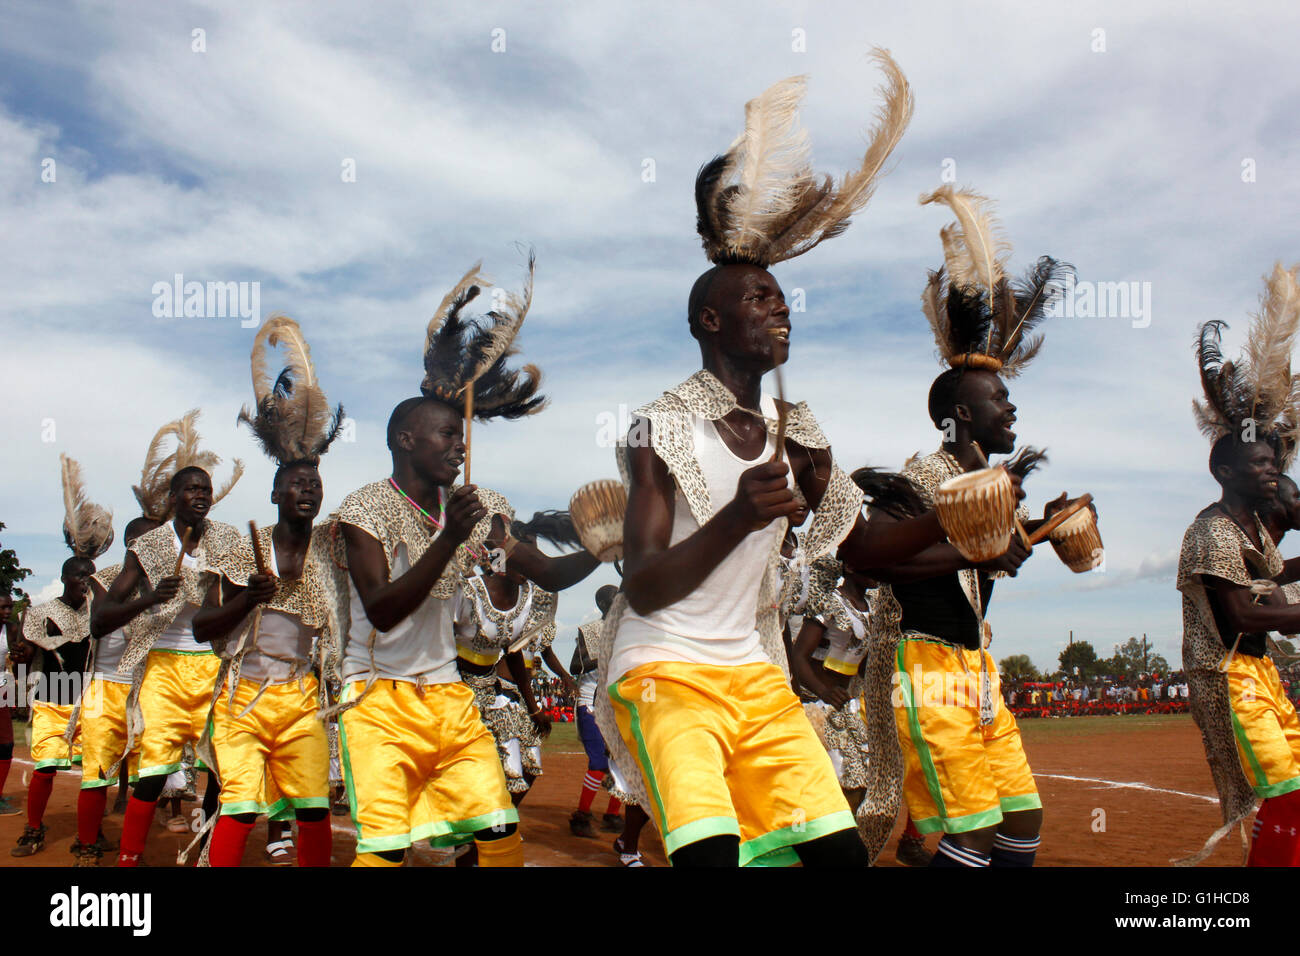 Traditionelle Tänzer unterhalten die Gäste in Uganda, Kampala. Musik und Tanz sind sehr wichtige Elemente der afrikanischen Gesellschaft. Stockfoto